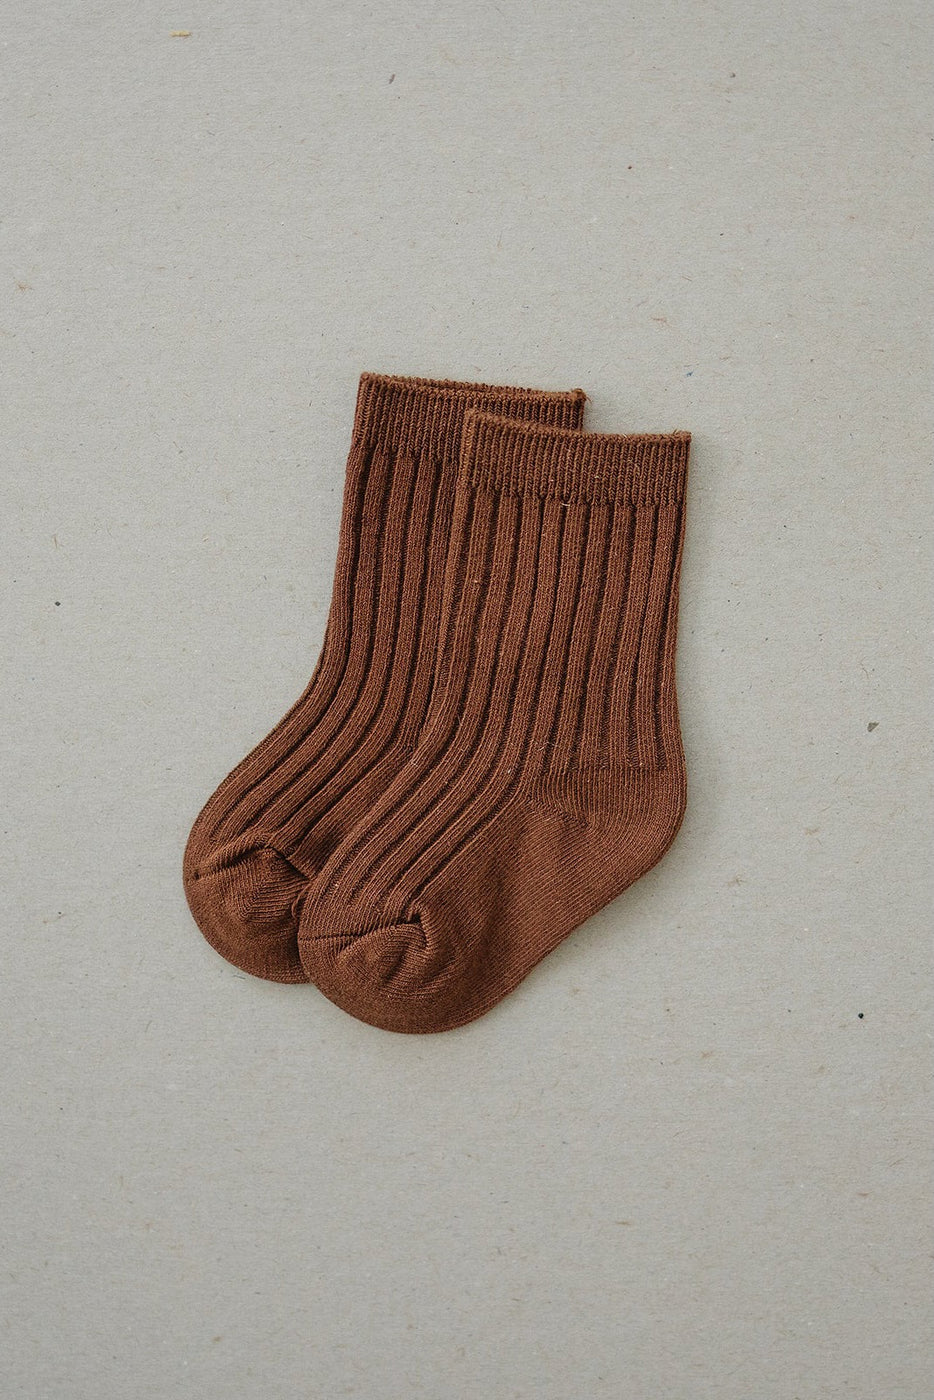 a pair of brown socks